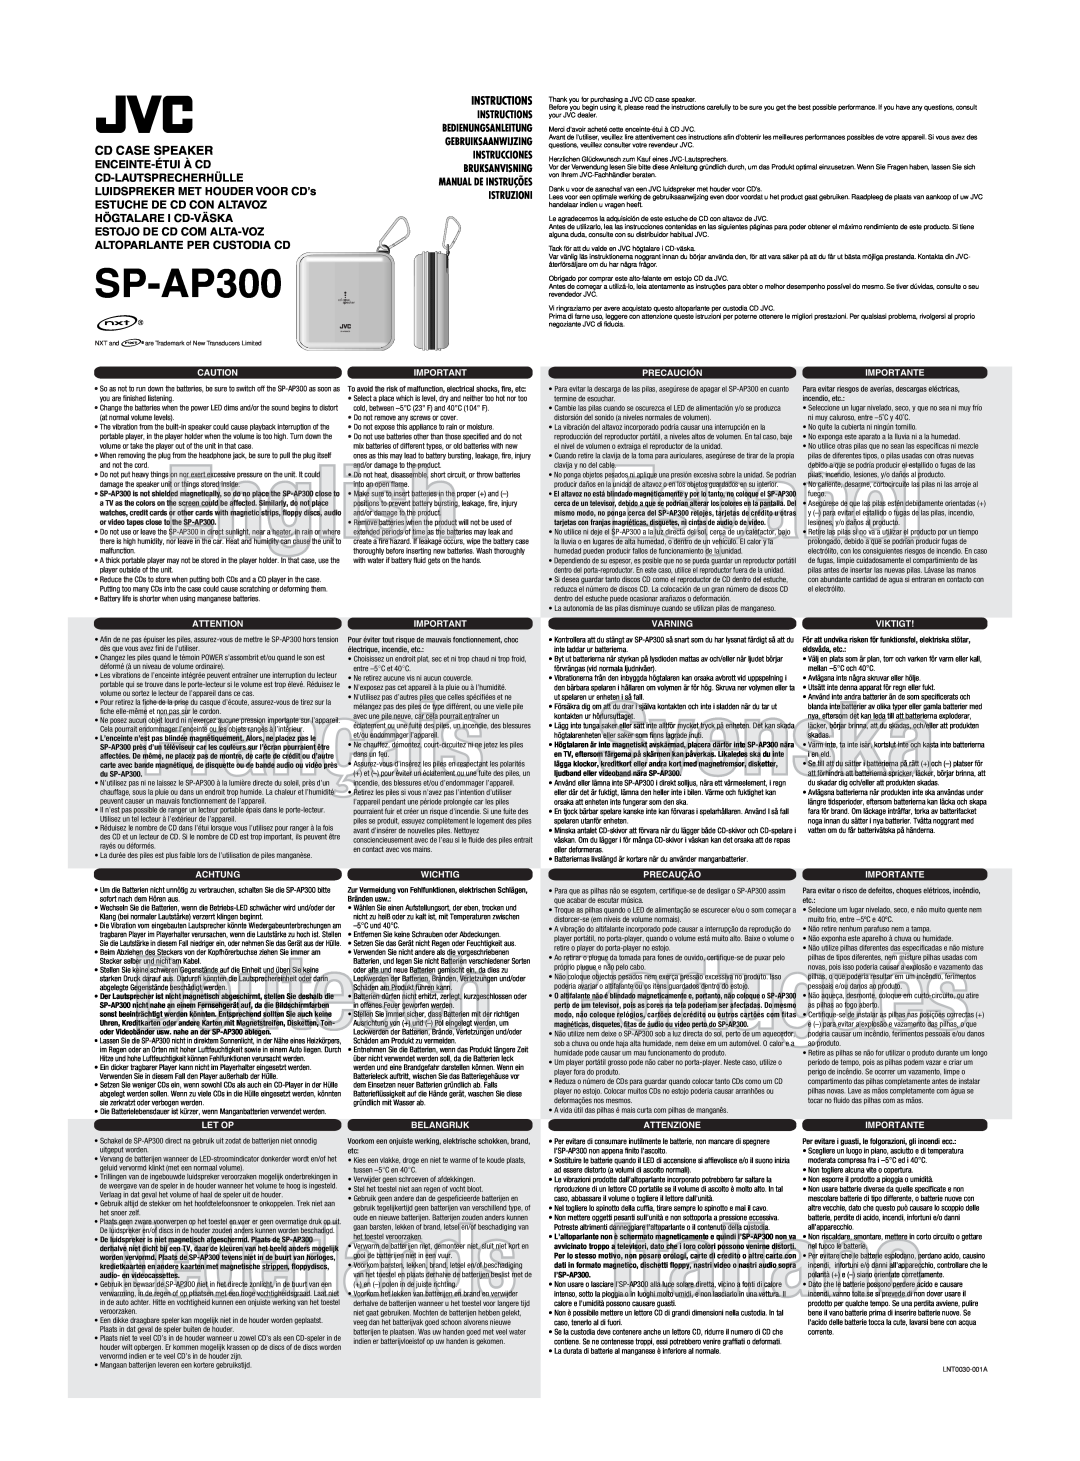 JVC SP-AP300 manual English, Português, Nederlands, Cd Case Speaker, Enceinte-Étuià Cd Cd-Lautsprecherhülle, Instructions 